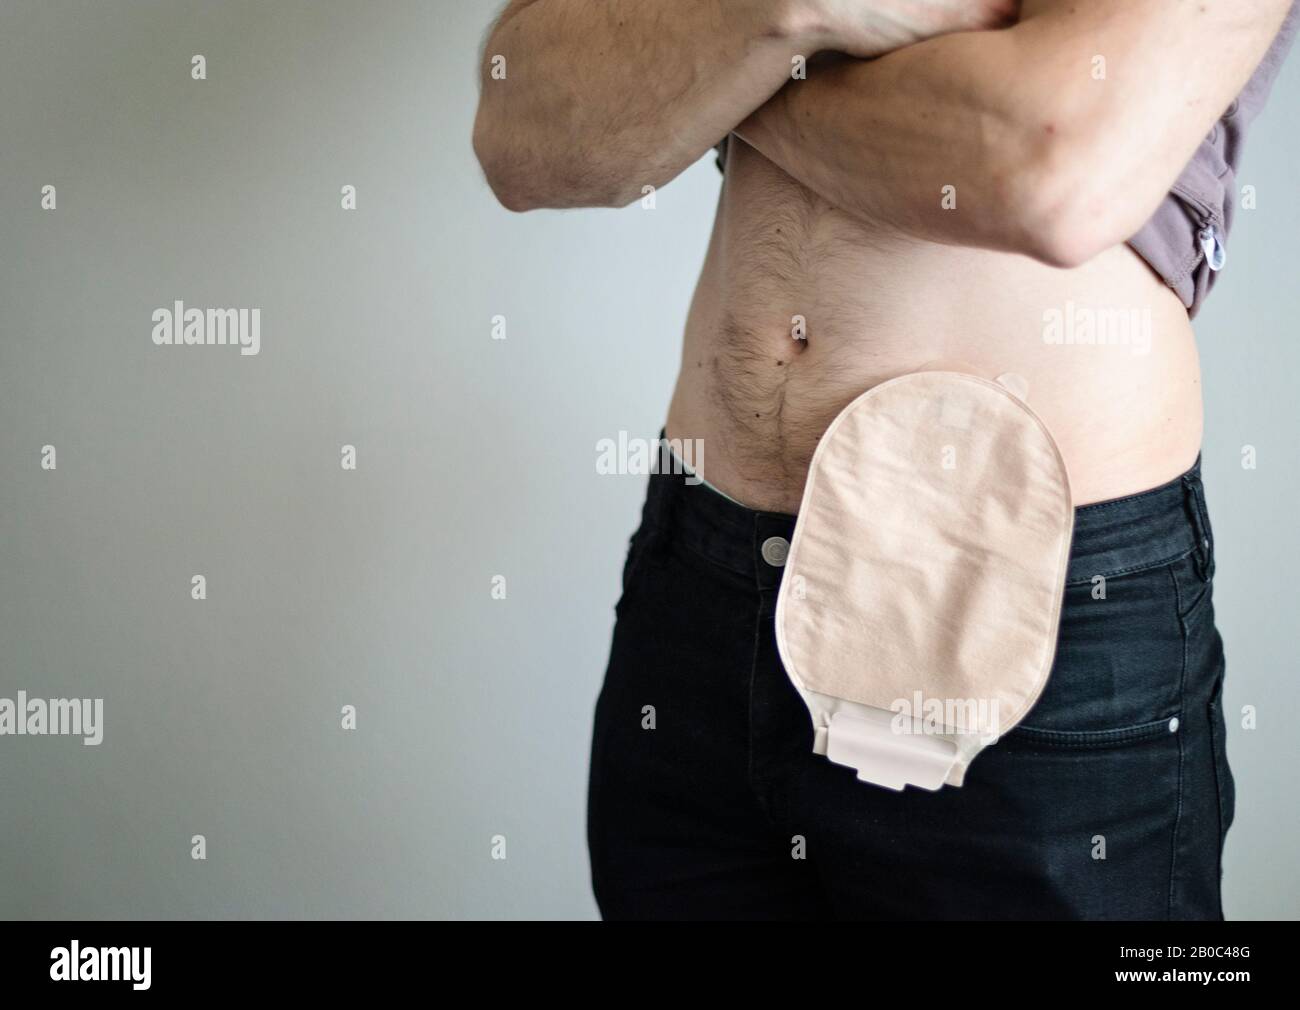 Vista frontal de la bolsa de colostomía acoplada al paciente del hombre,  tema médico. Primer plano de la bolsa de ostomía de color de la piel.  Tratamiento quirúrgico del cáncer de colon.